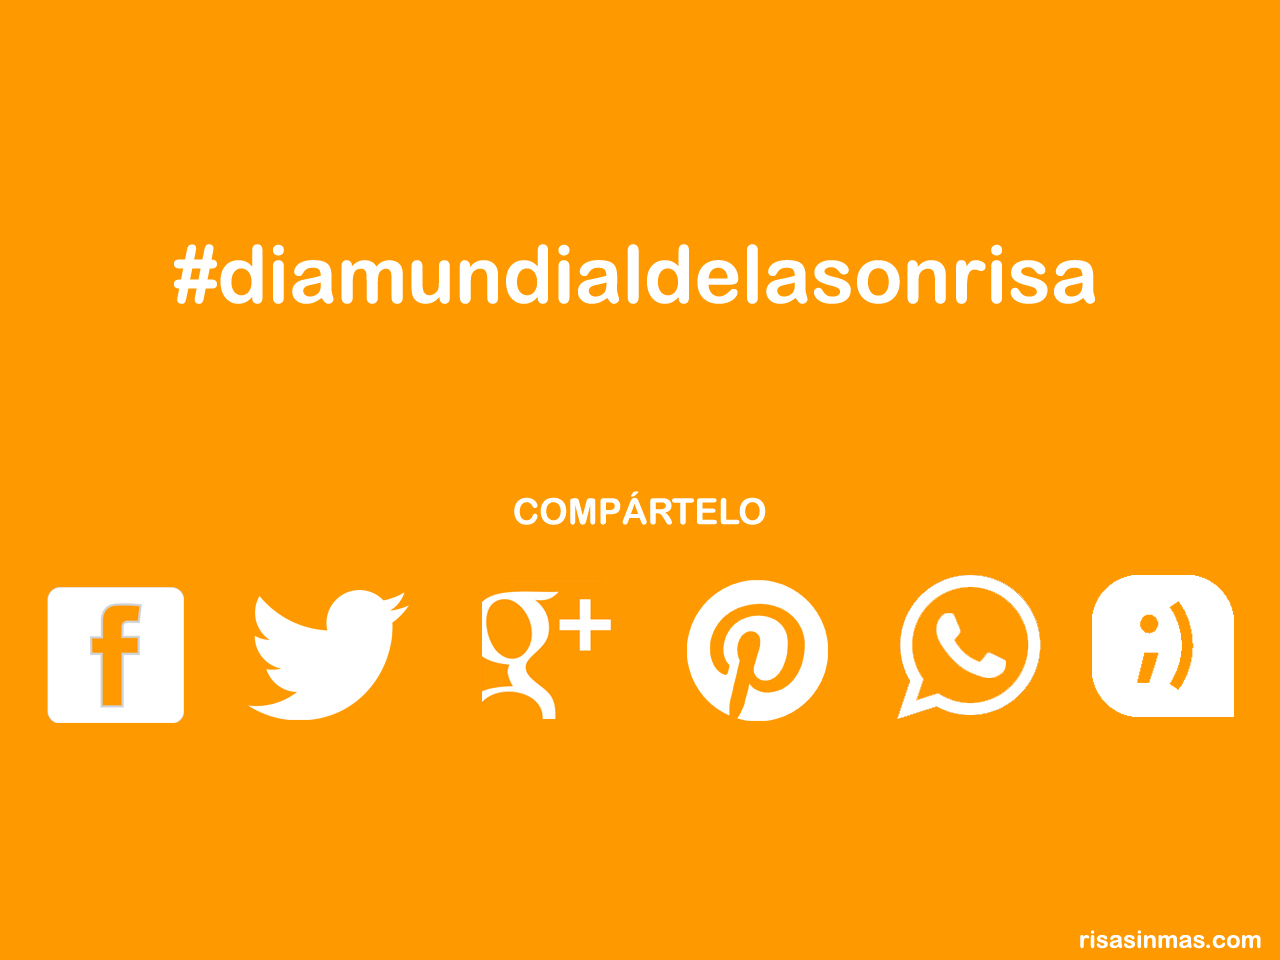 #diamundialdelasonrisa, el hashtag para el Día Mundial de la Sonrisa.